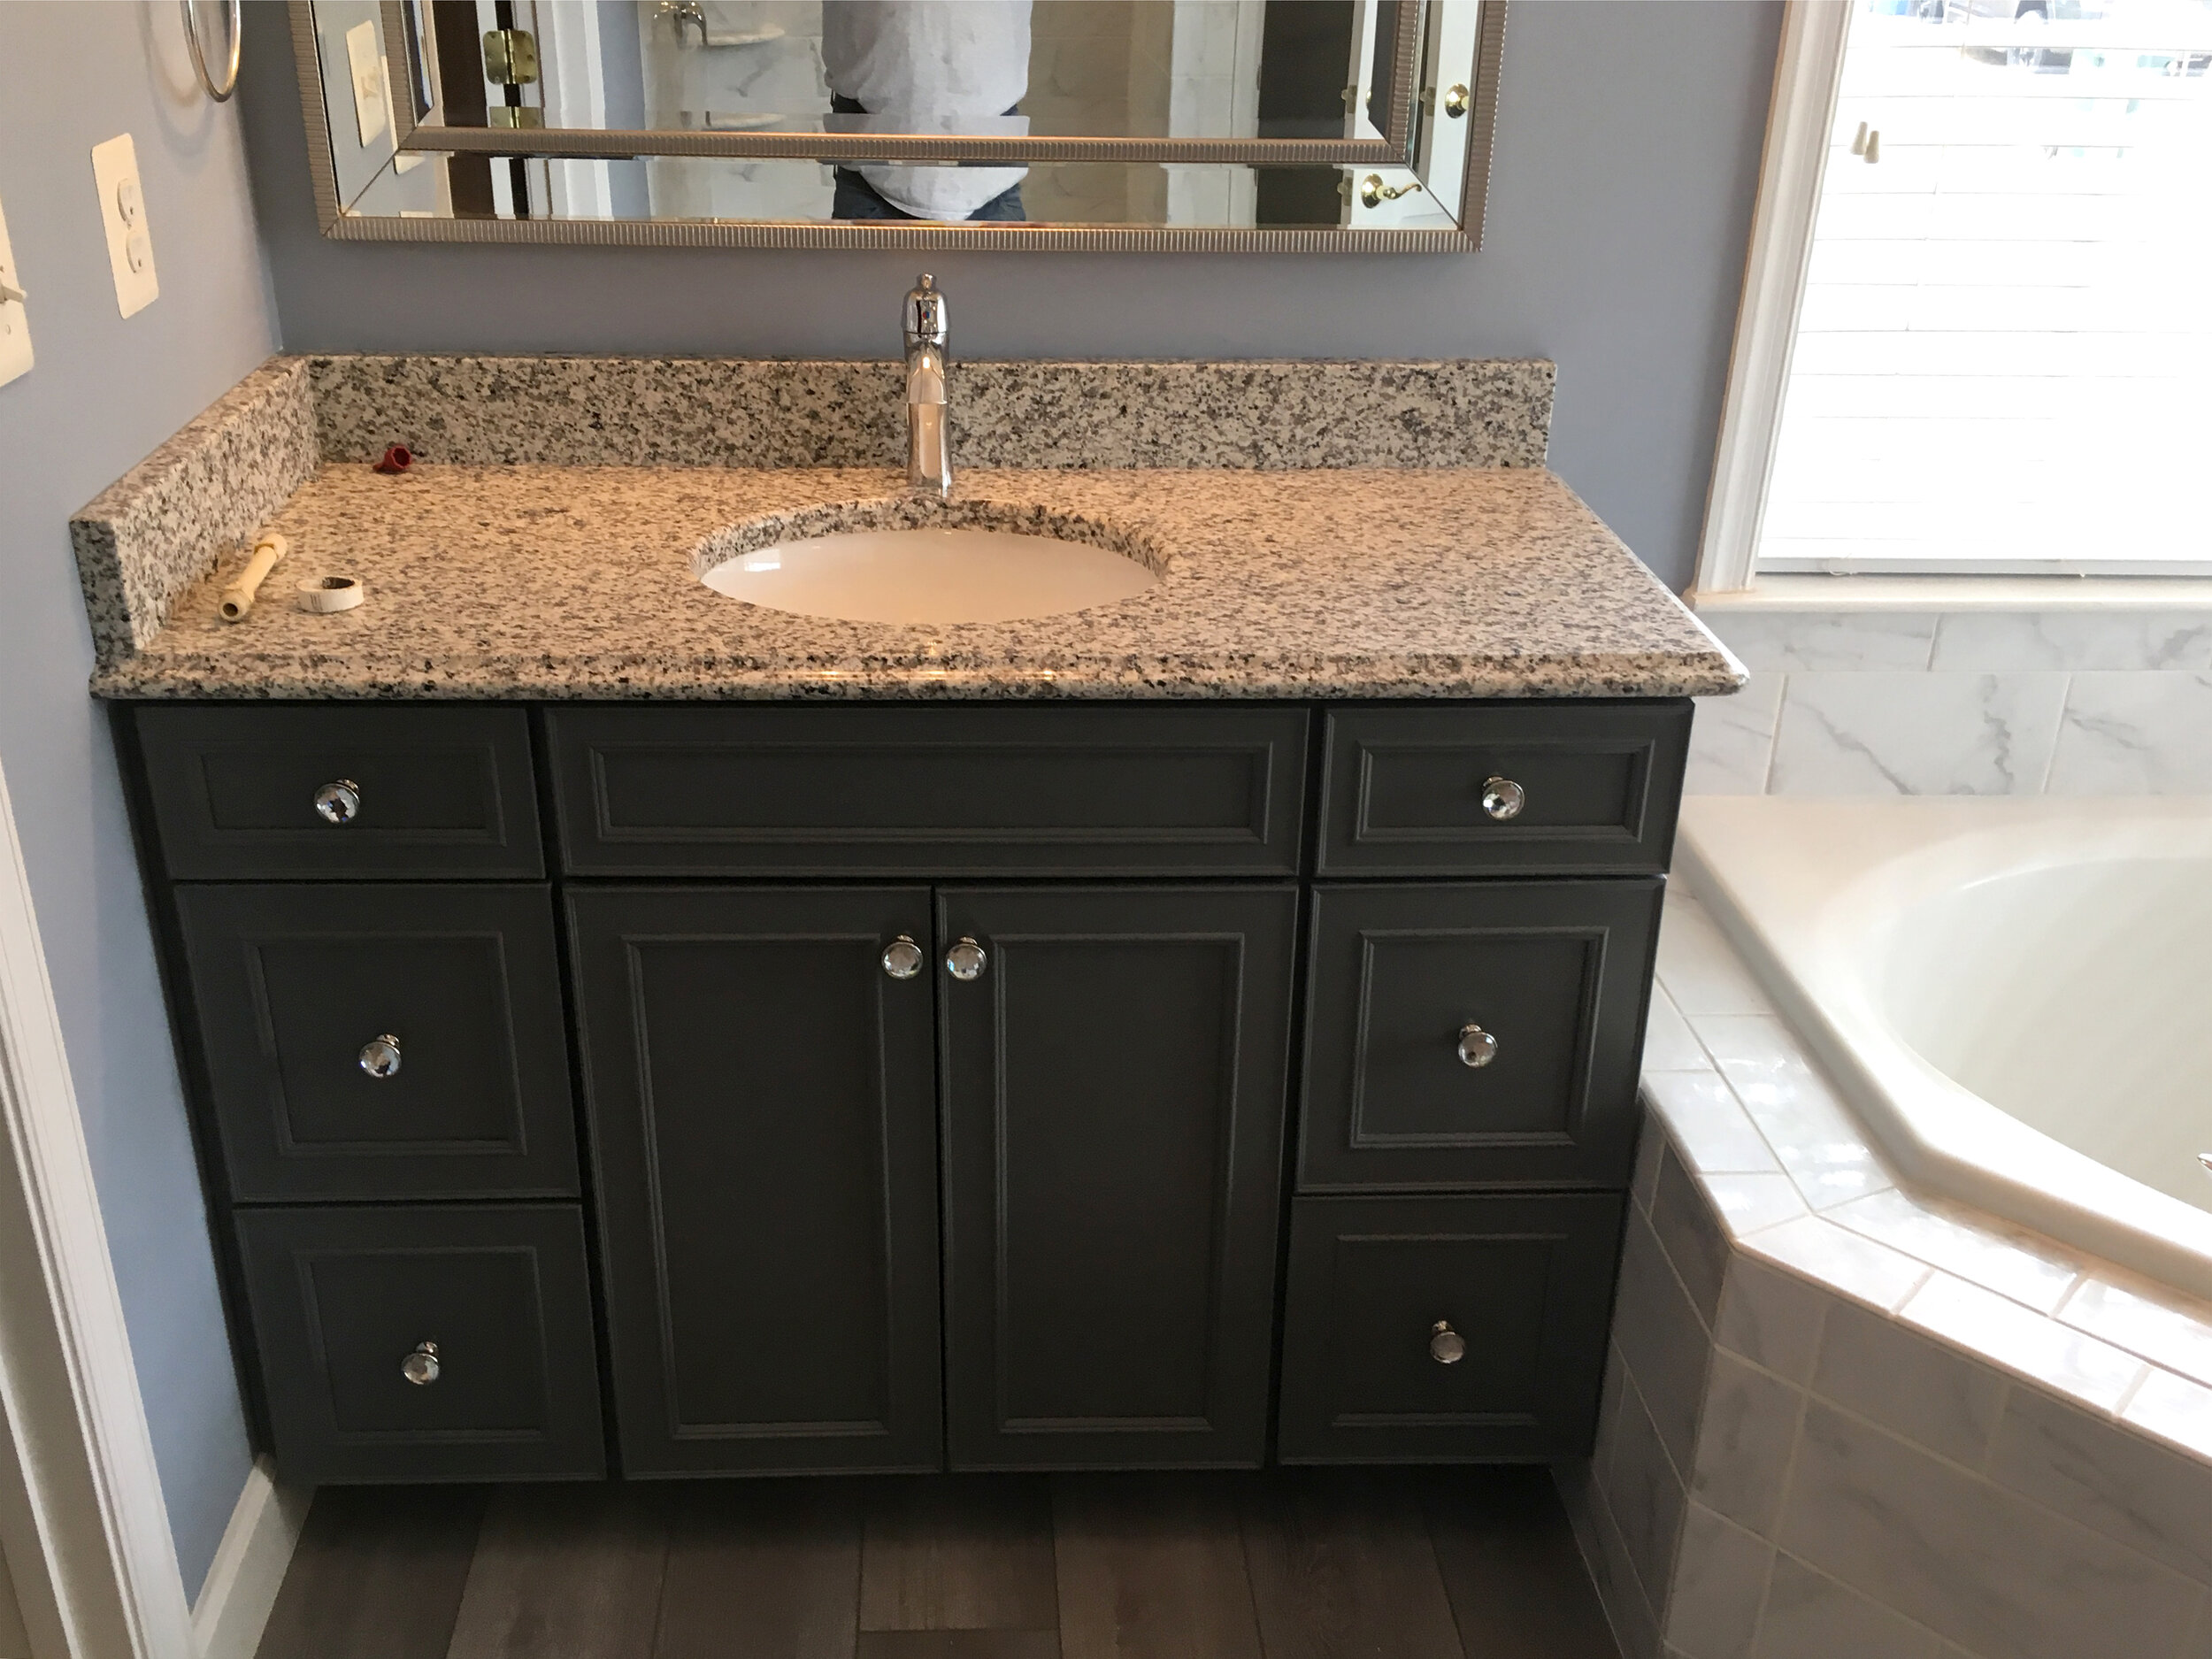 Cabinet-with-Luna-Pearl-granite-countertop.JPG